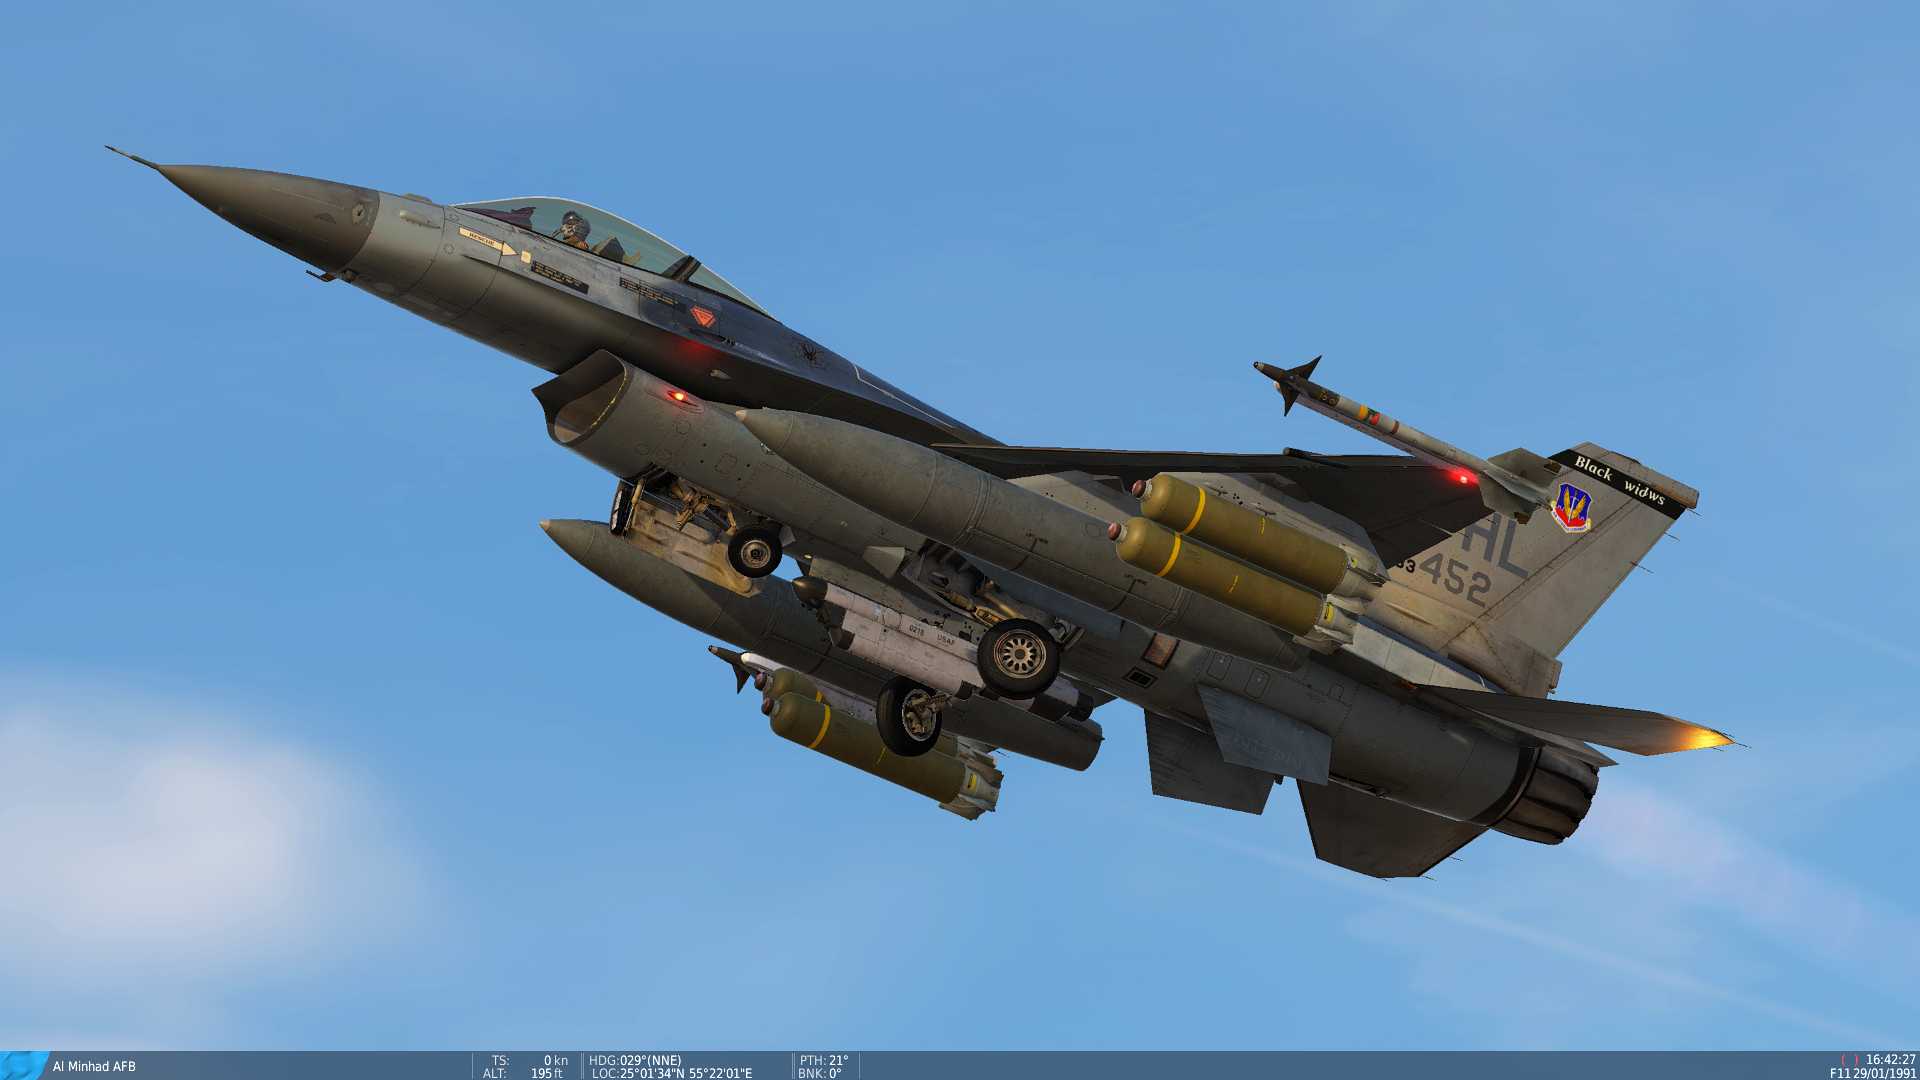 F-16CG Blk. 40D Skin From Desert Storm, 1991